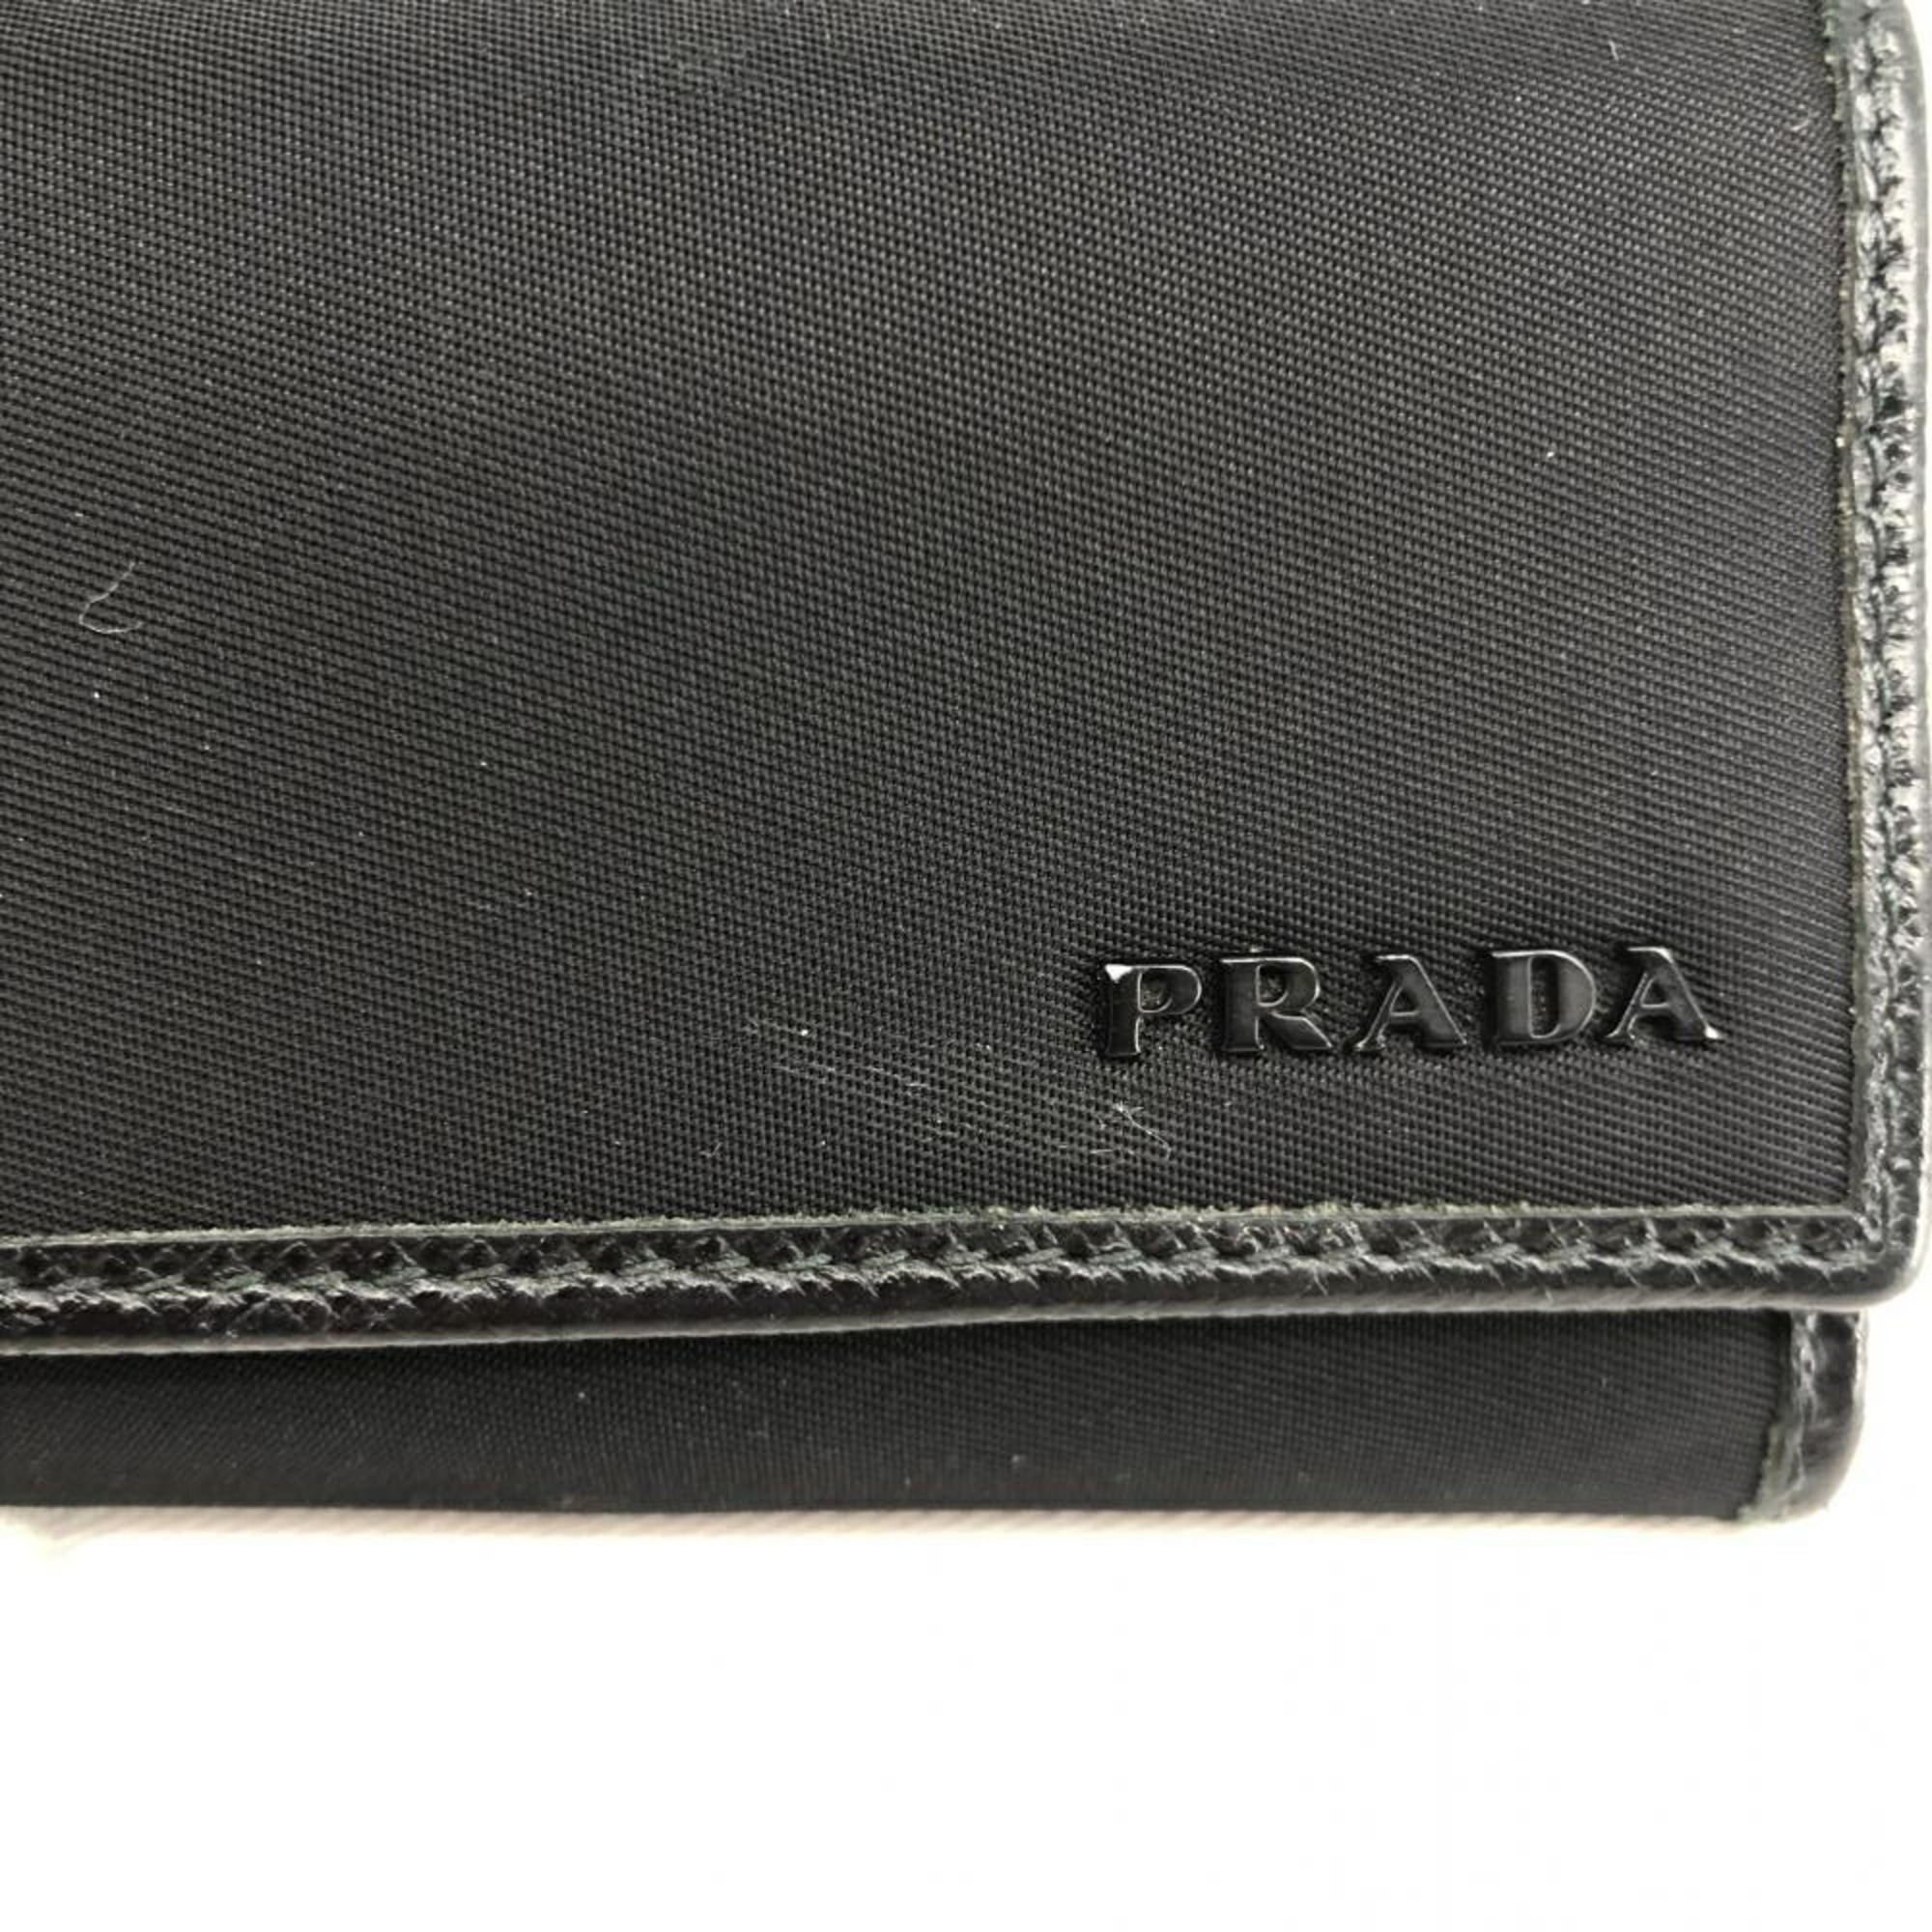 PRADA 6-ring 2PG222 nylon key case, black, Prada